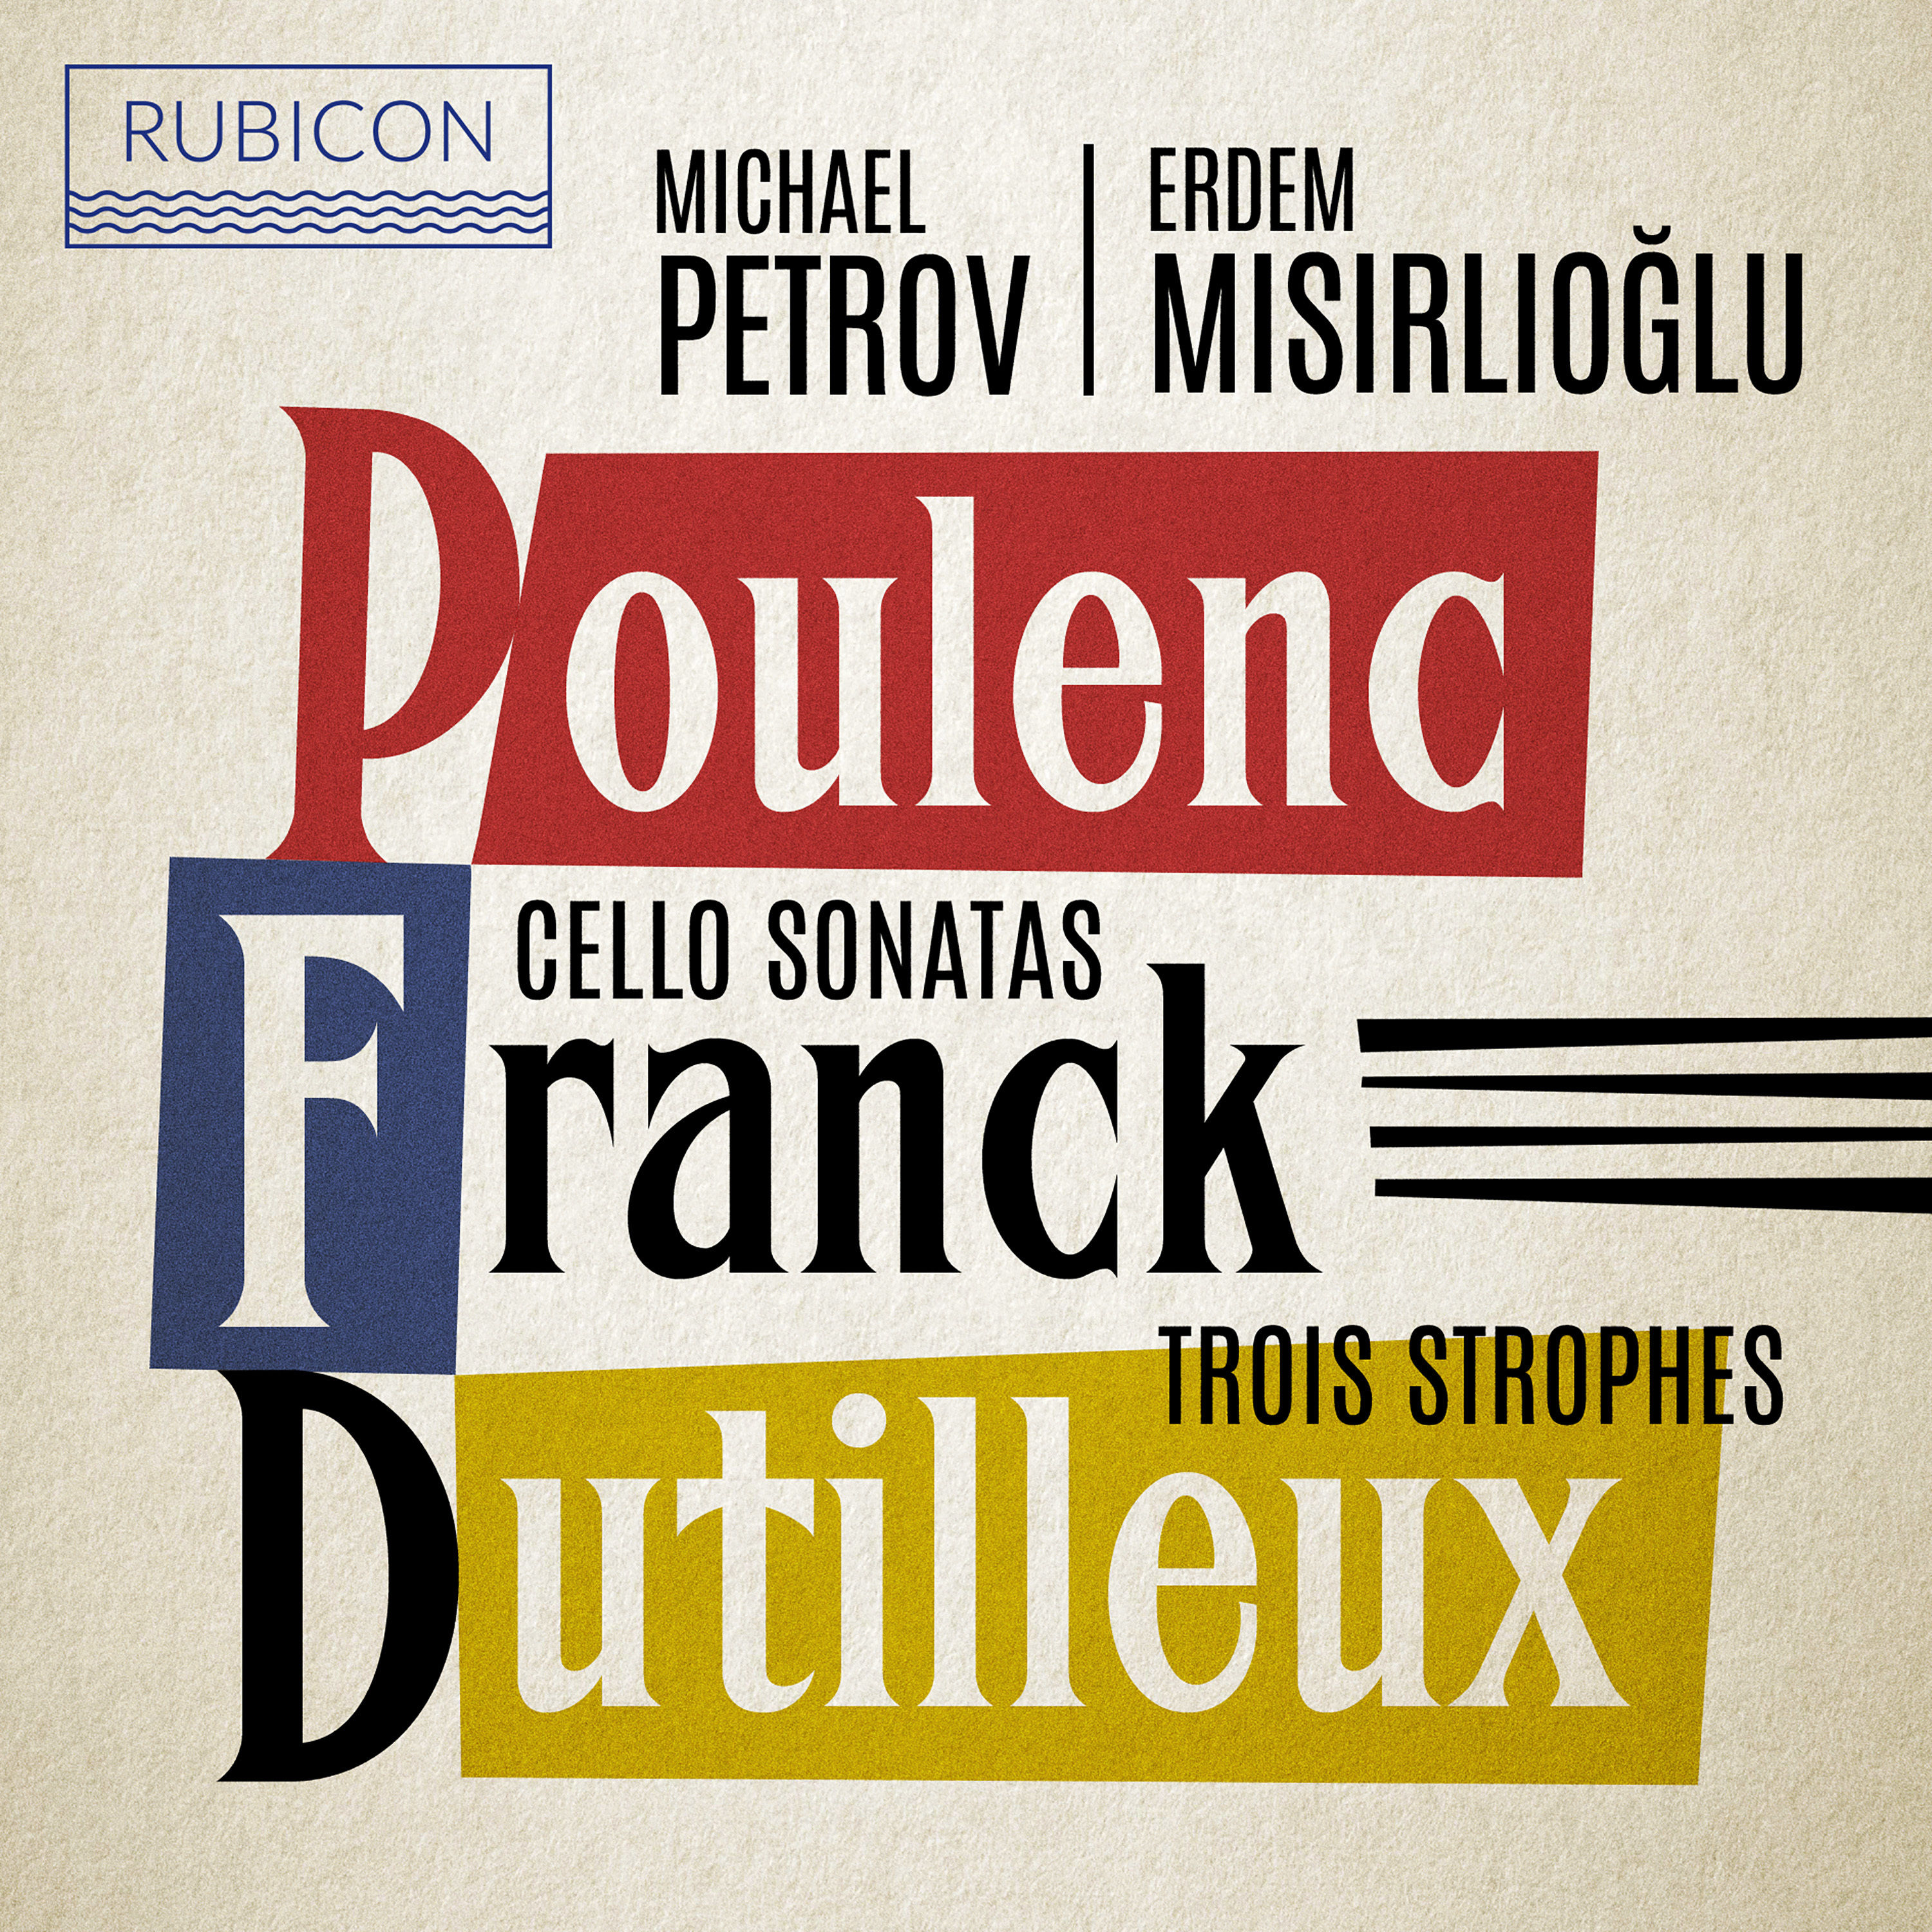 Erdem Misirlioglu – Poulenc, Franck: Cello Sonatas – Dutilleux: Trois Strophes (2021) [FLAC 24bit/96kHz]